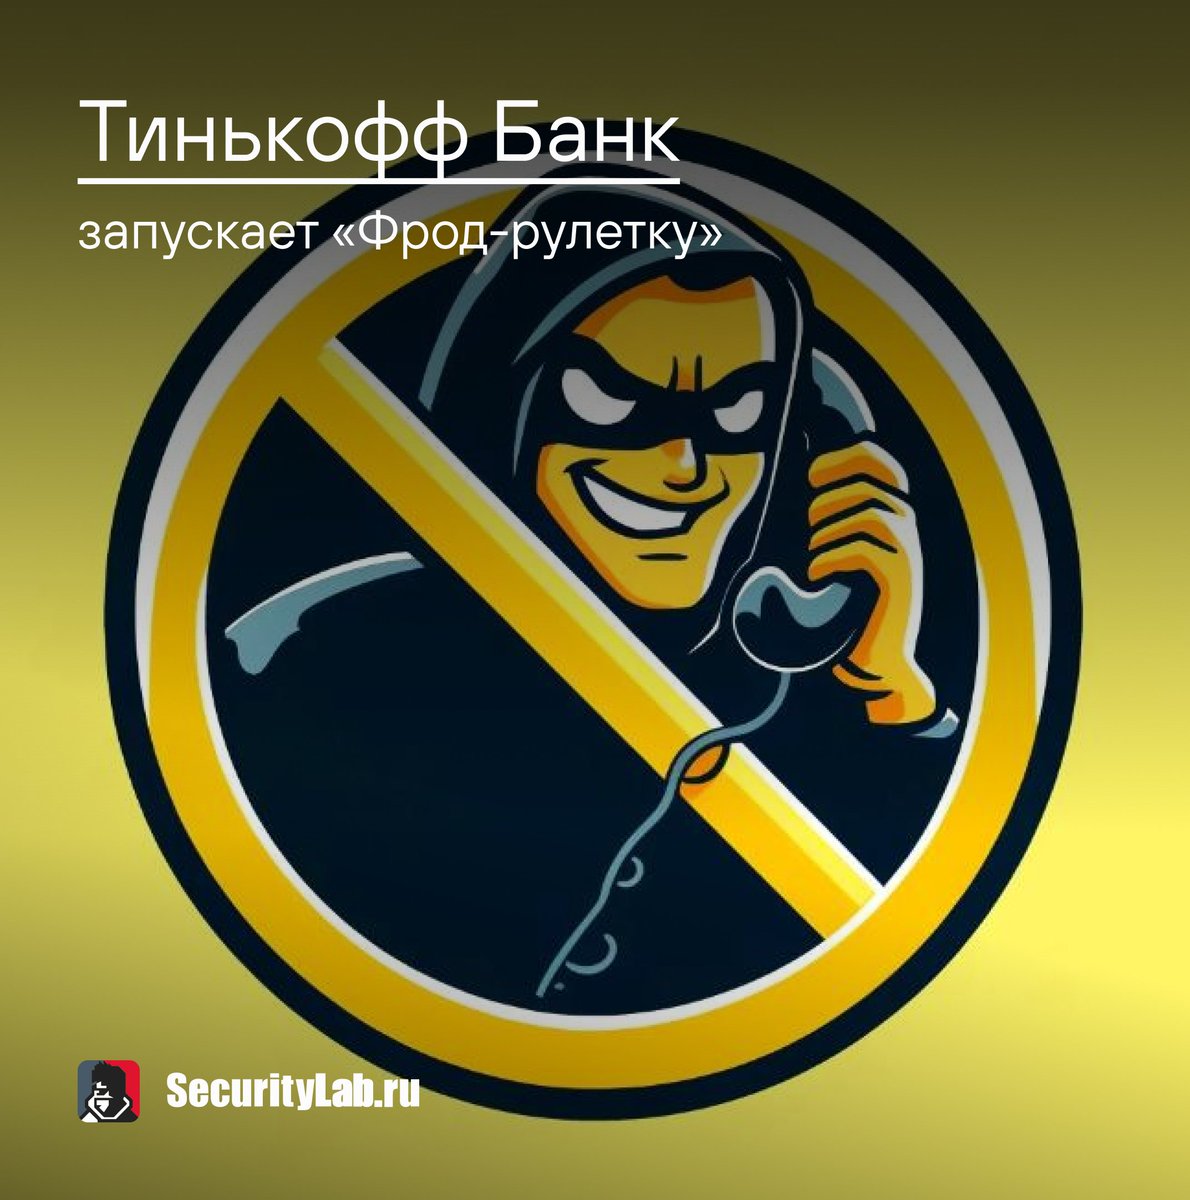 Тинькофф Банк запустил пилотный проект «Фрод-рулетка» для борьбы с телефонными мошенниками: securitylab.ru/news/547751.php

#Tinkoff #banks #BankingInnovation #NEWSRING